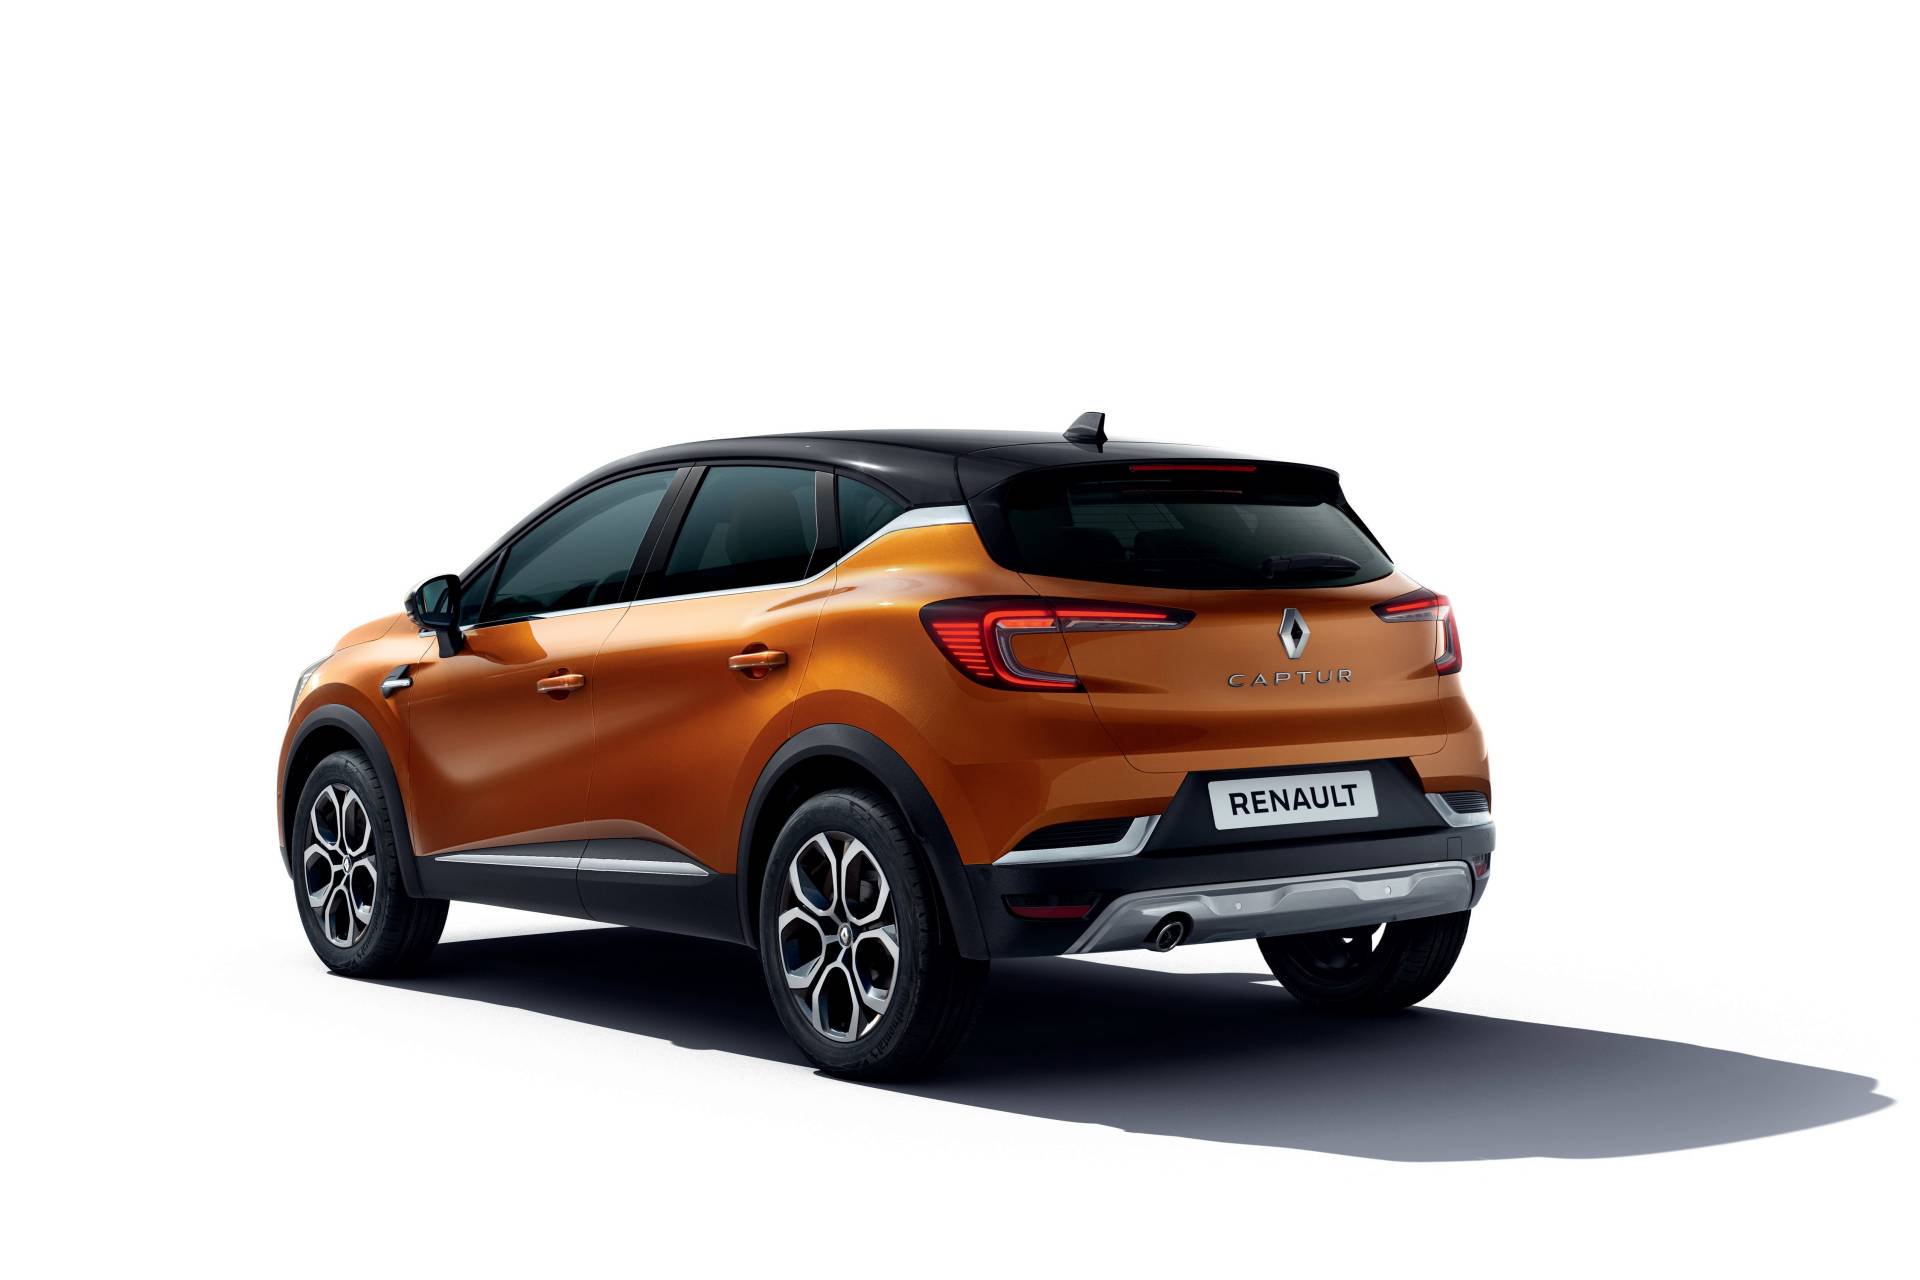 2019 Renault Captur tanıtıldı: İşte tasarımı ve özellikleri